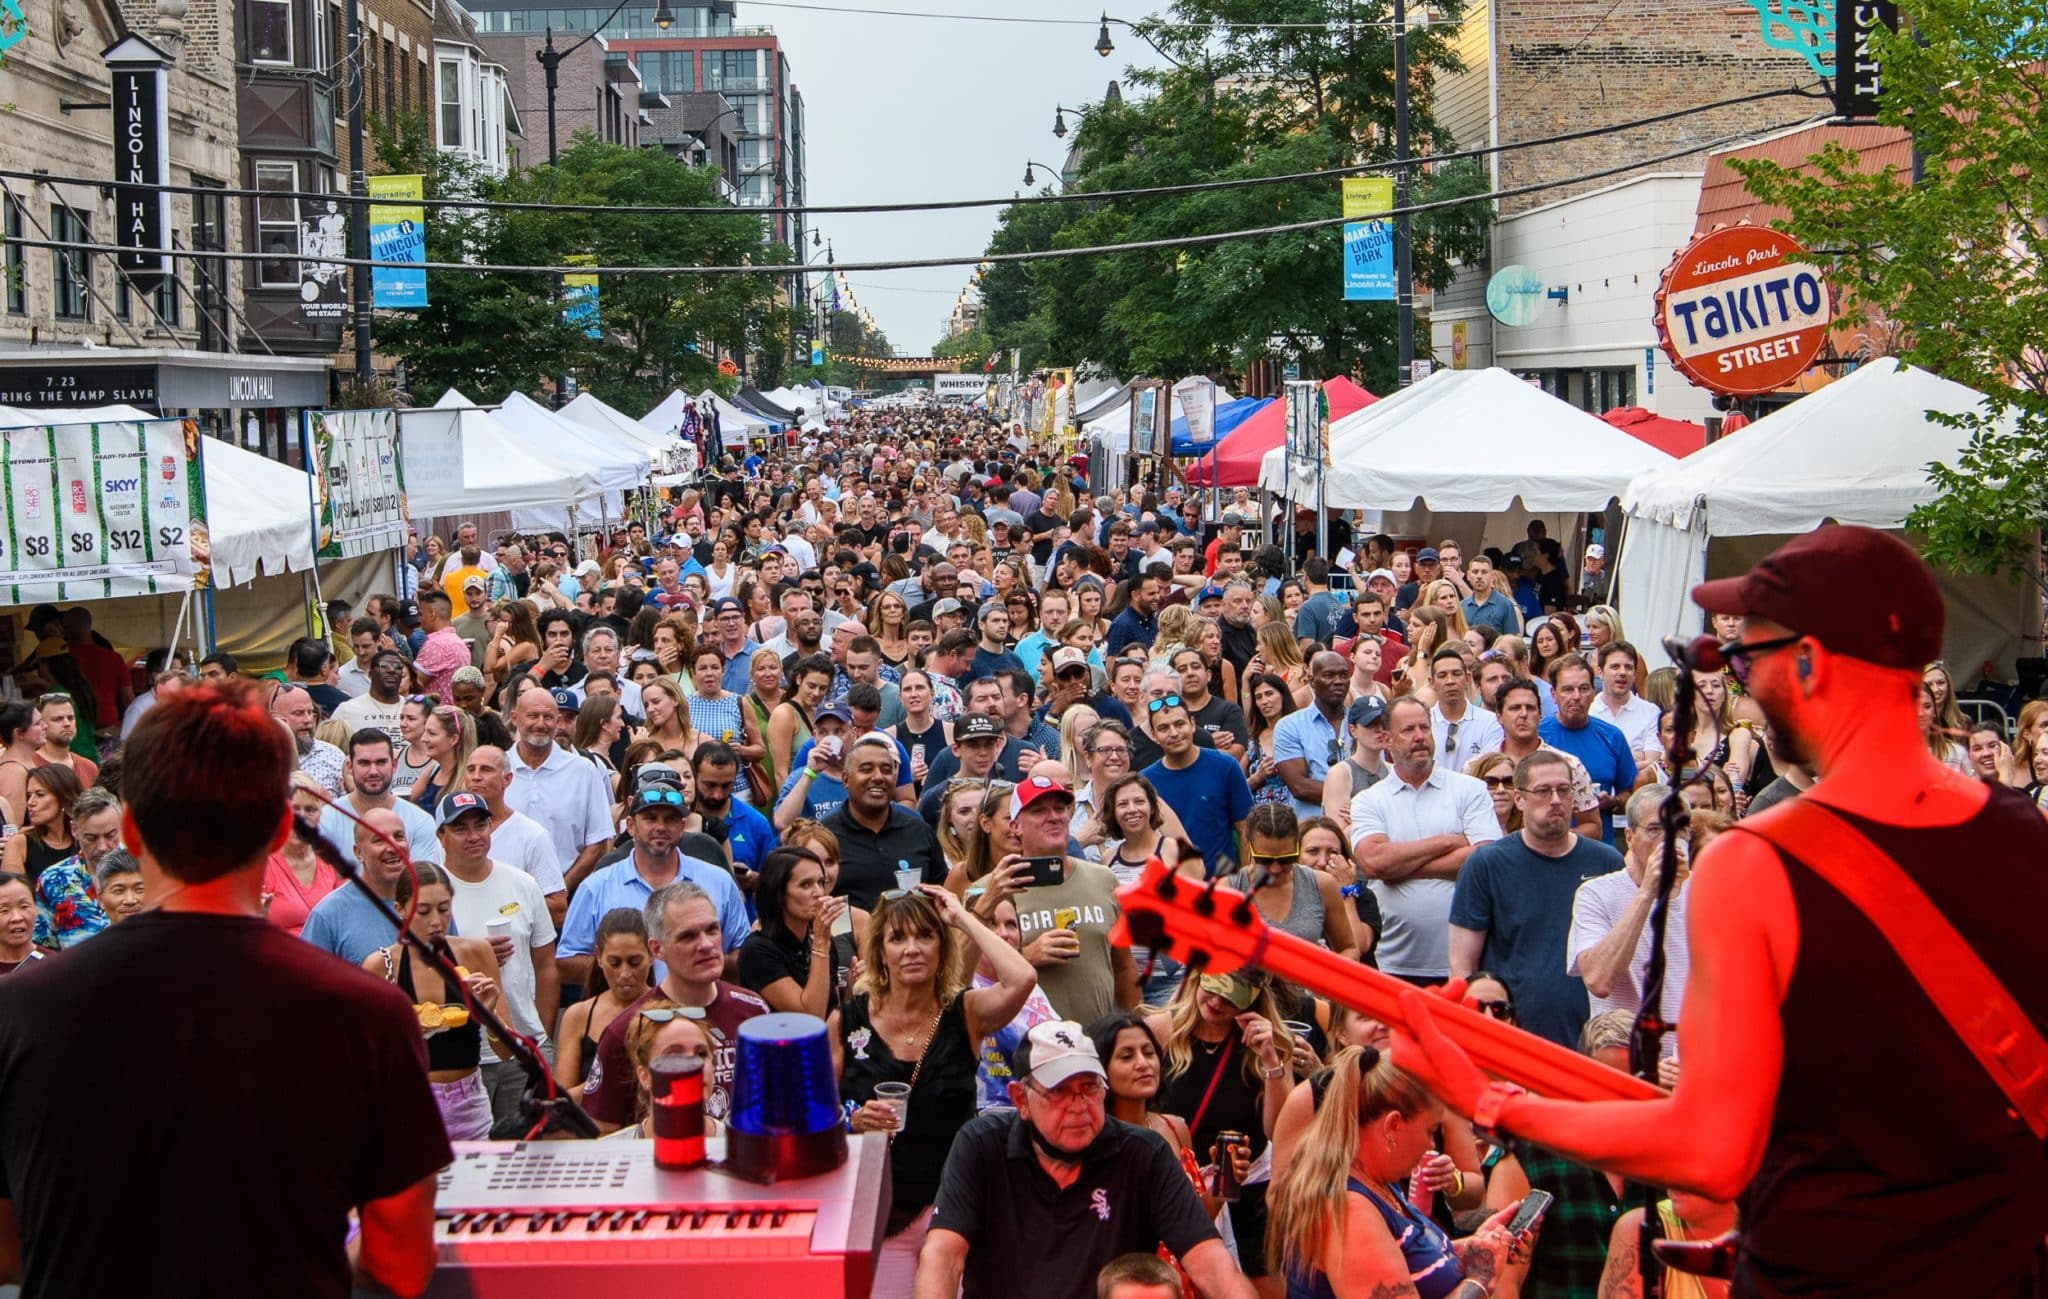 The 39th Annual Main Street Festival